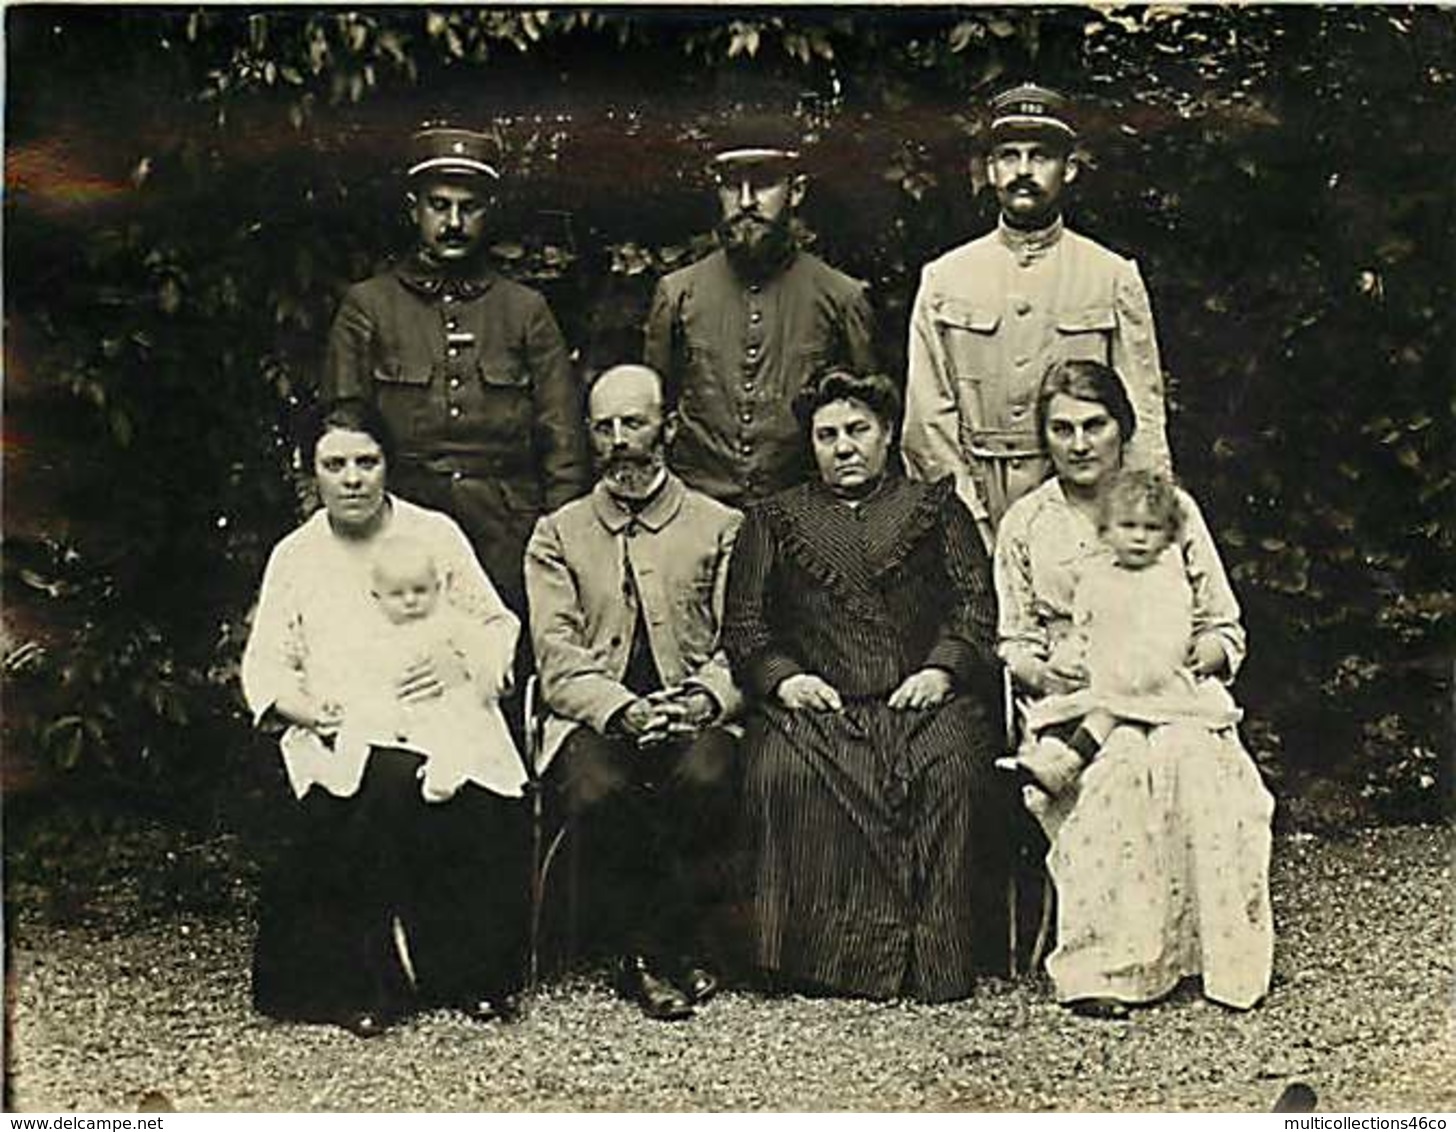 041218 - GENEALOGIE Familles DUJARDIN CAILLET 1915 Photo De Famille à DANNEMARIE Militaire N° 120 Au Képi GUERRE 14 18 - Généalogie